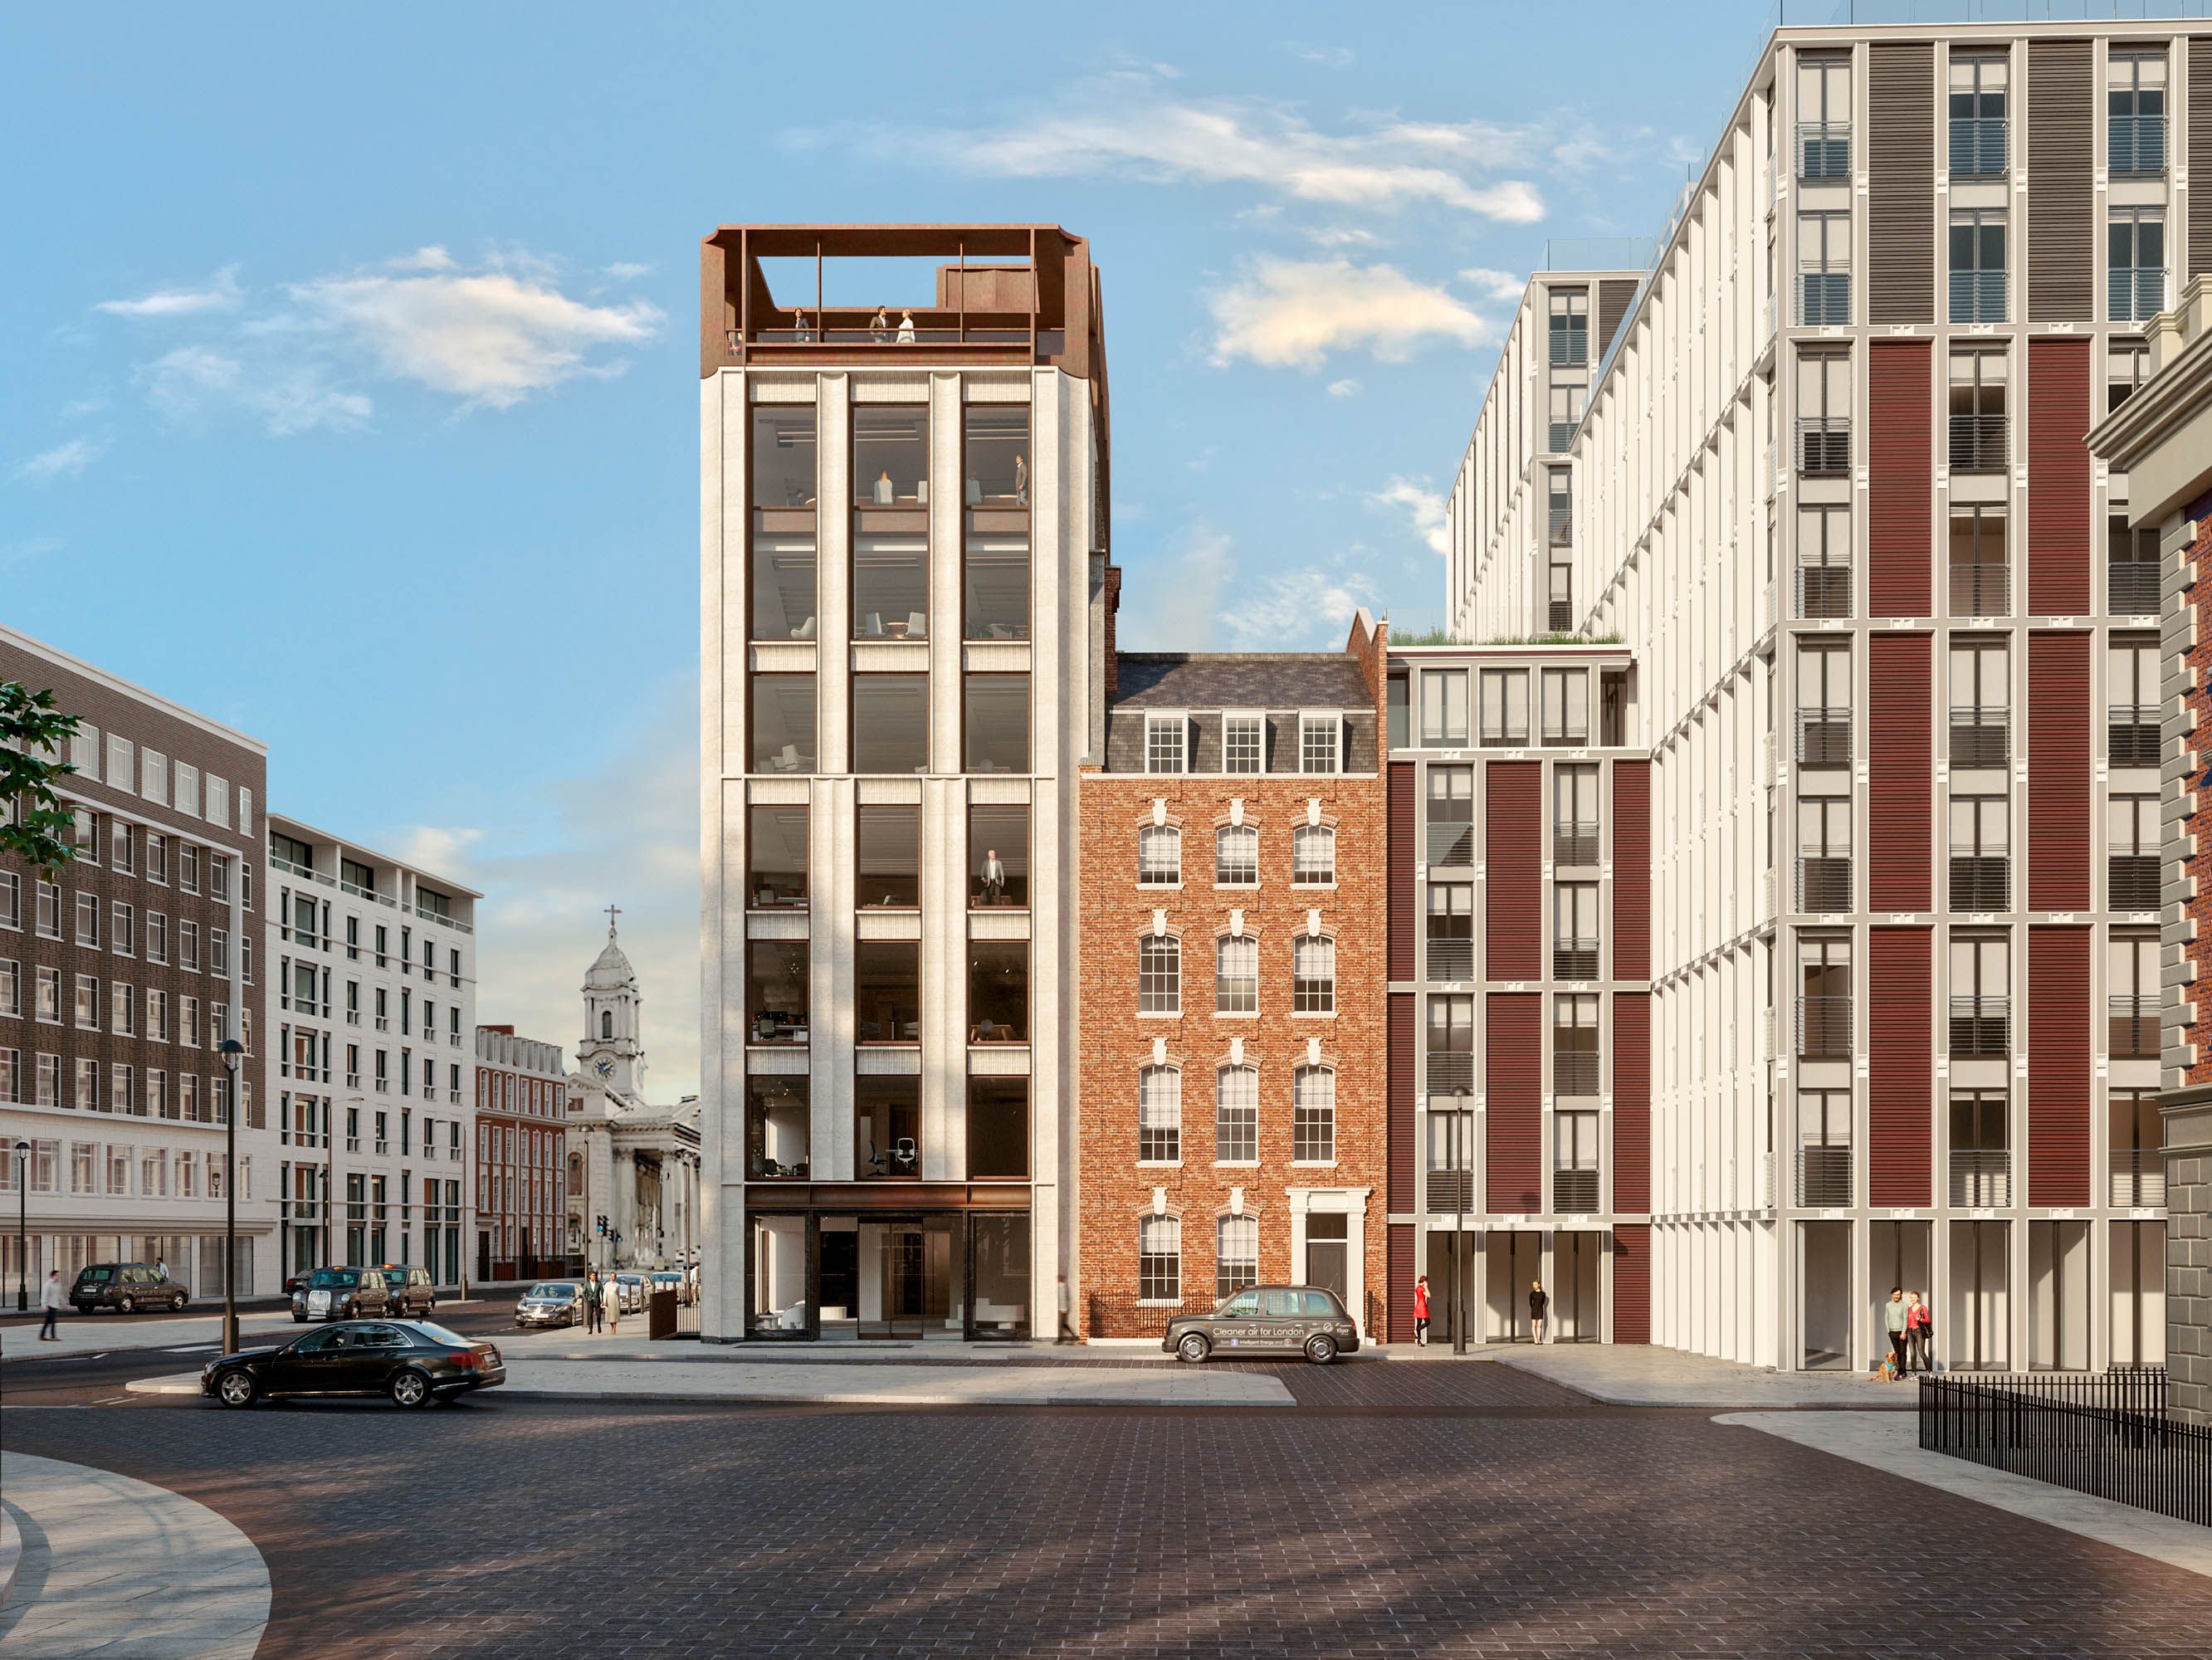 25 Hanover Square — Architecture